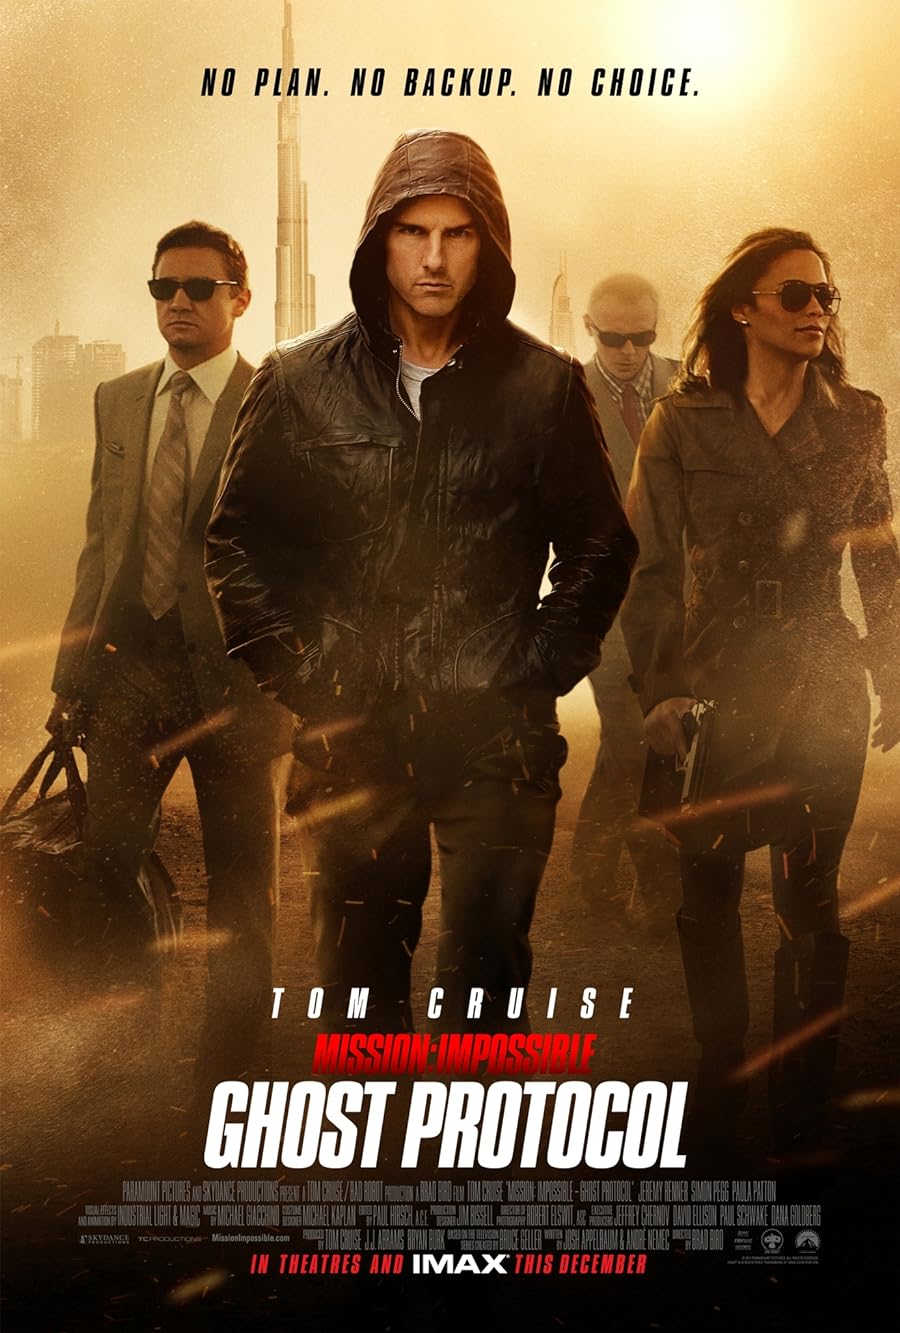 دانلود فیلم Mission: Impossible – Ghost Protocol 2011